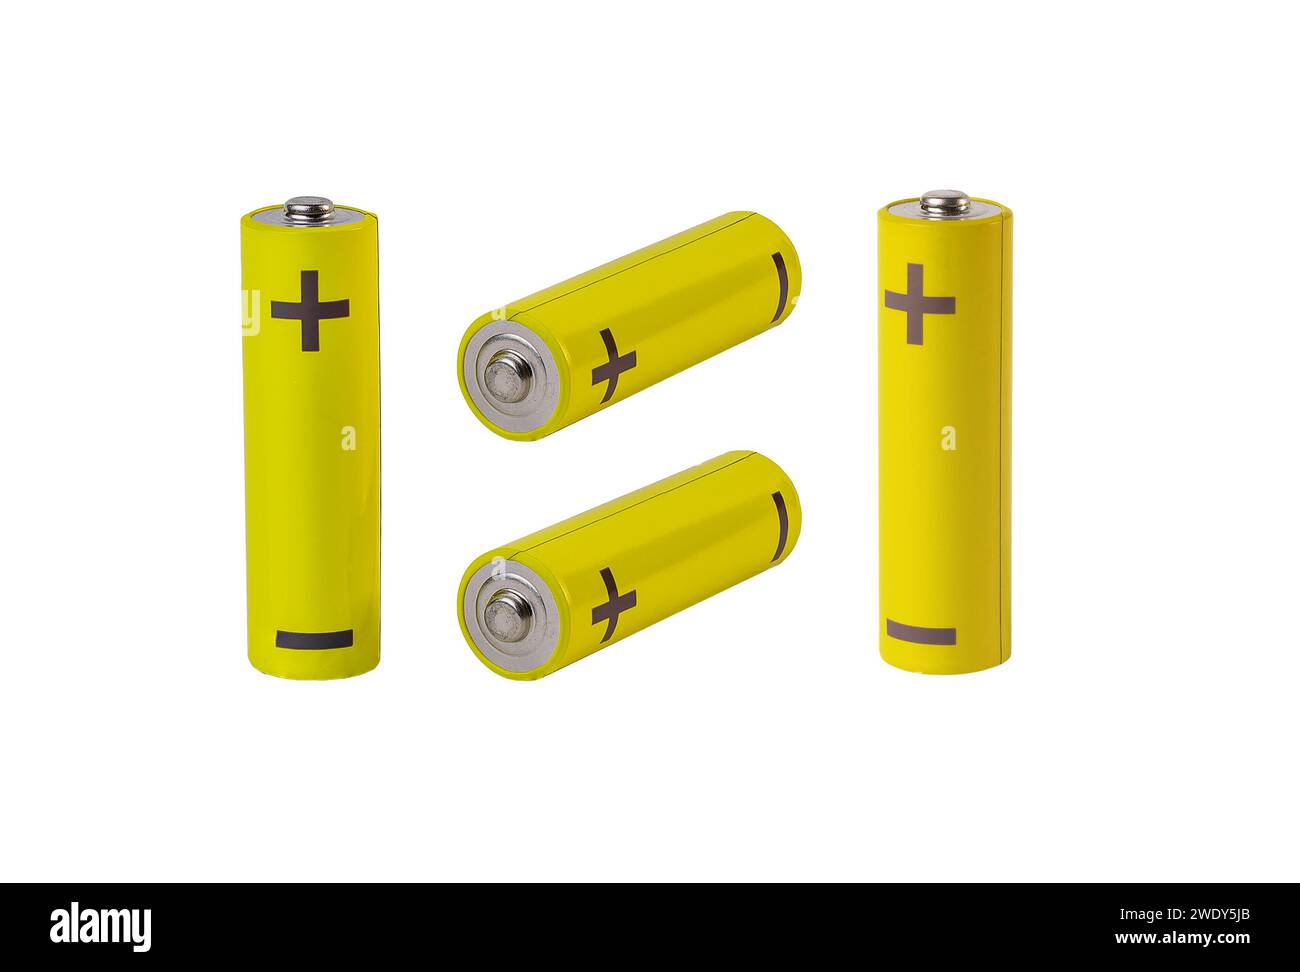 Composizione delle batterie AA. Cilindri gialli isolati su bianco Foto Stock